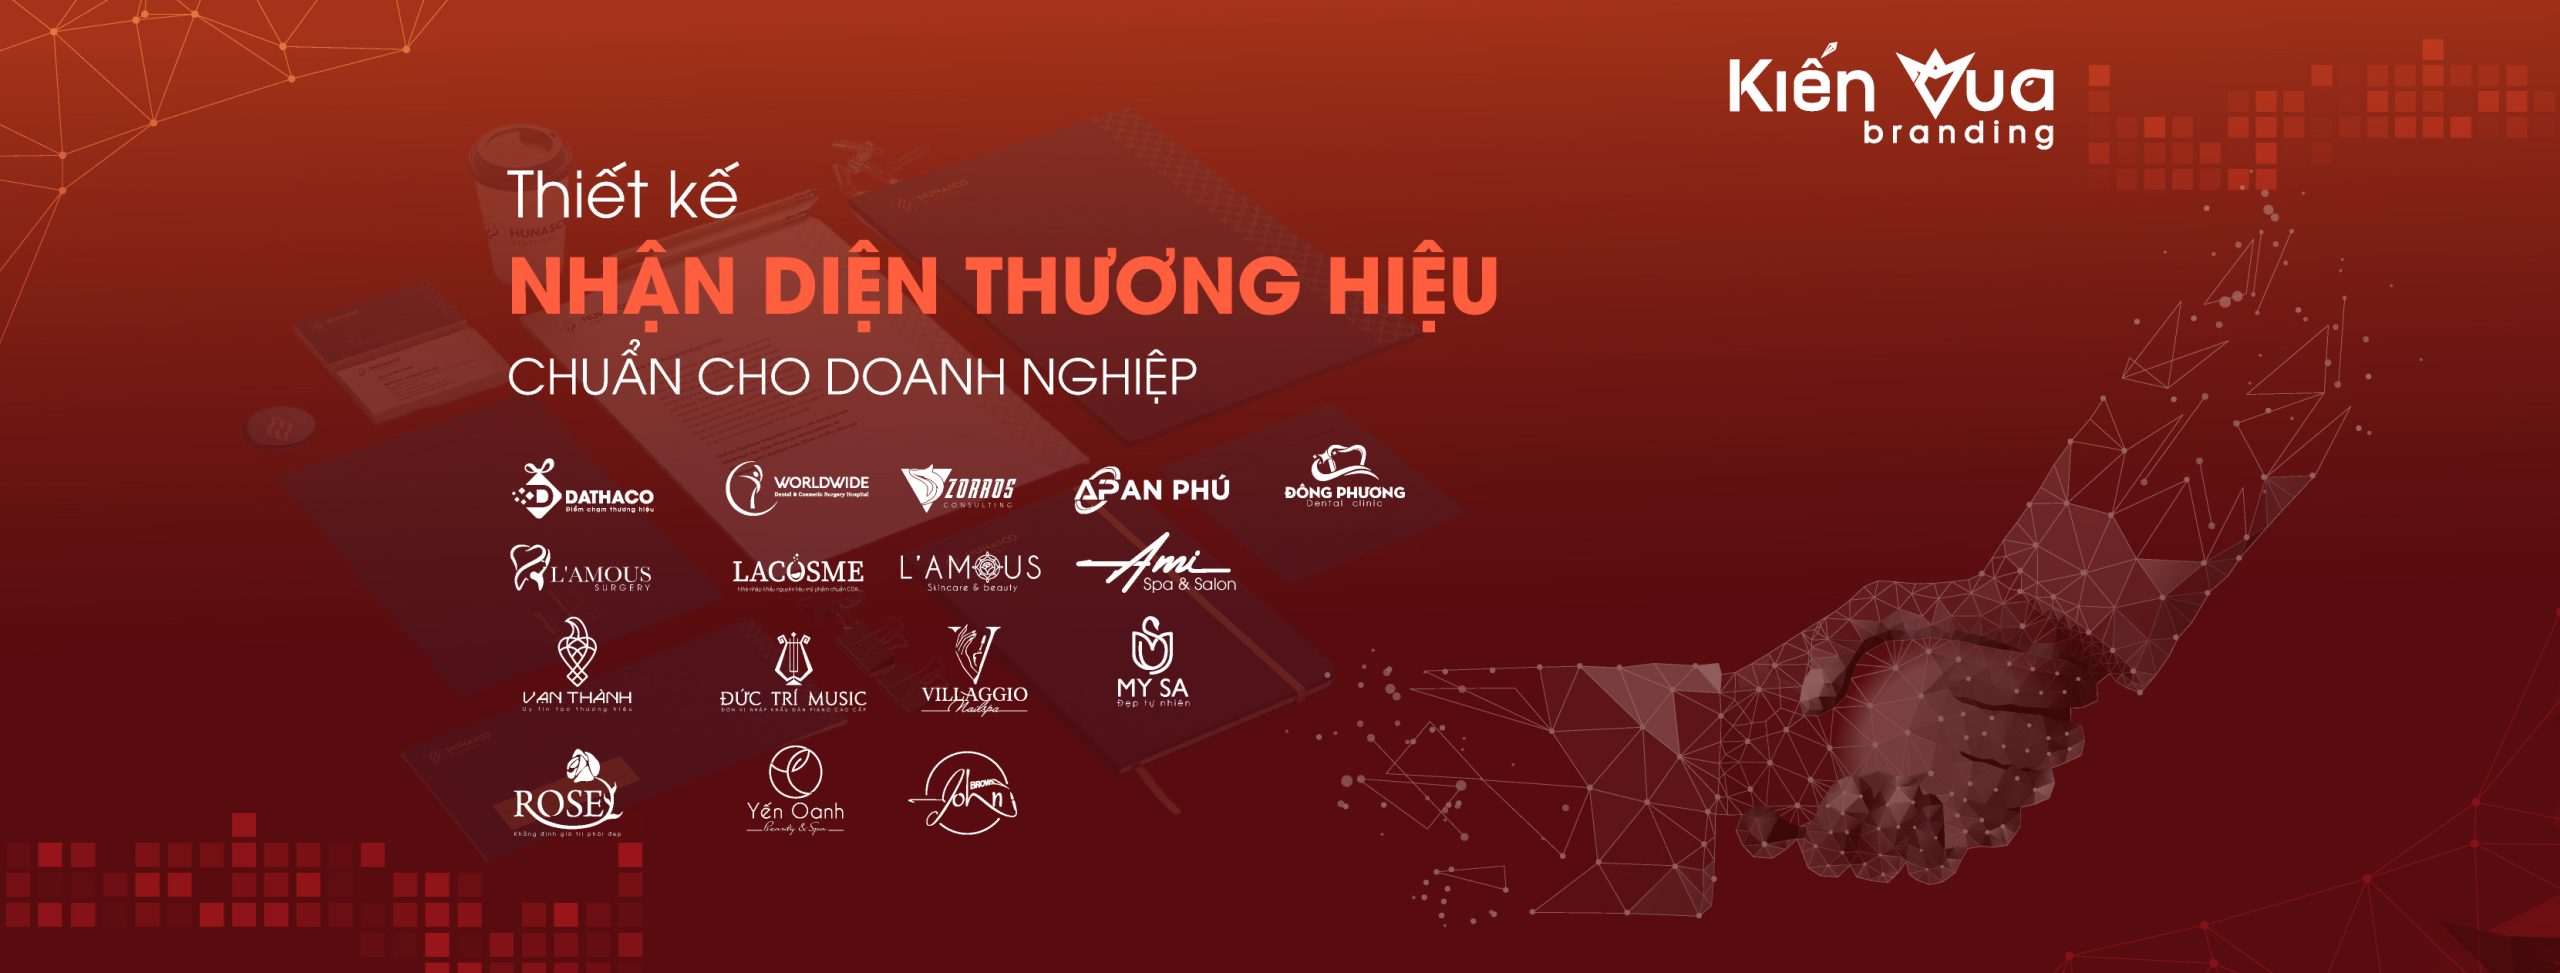 Kiến Vua Branding - Công ty làm quảng cáo tại Sài Gòn chất lượng